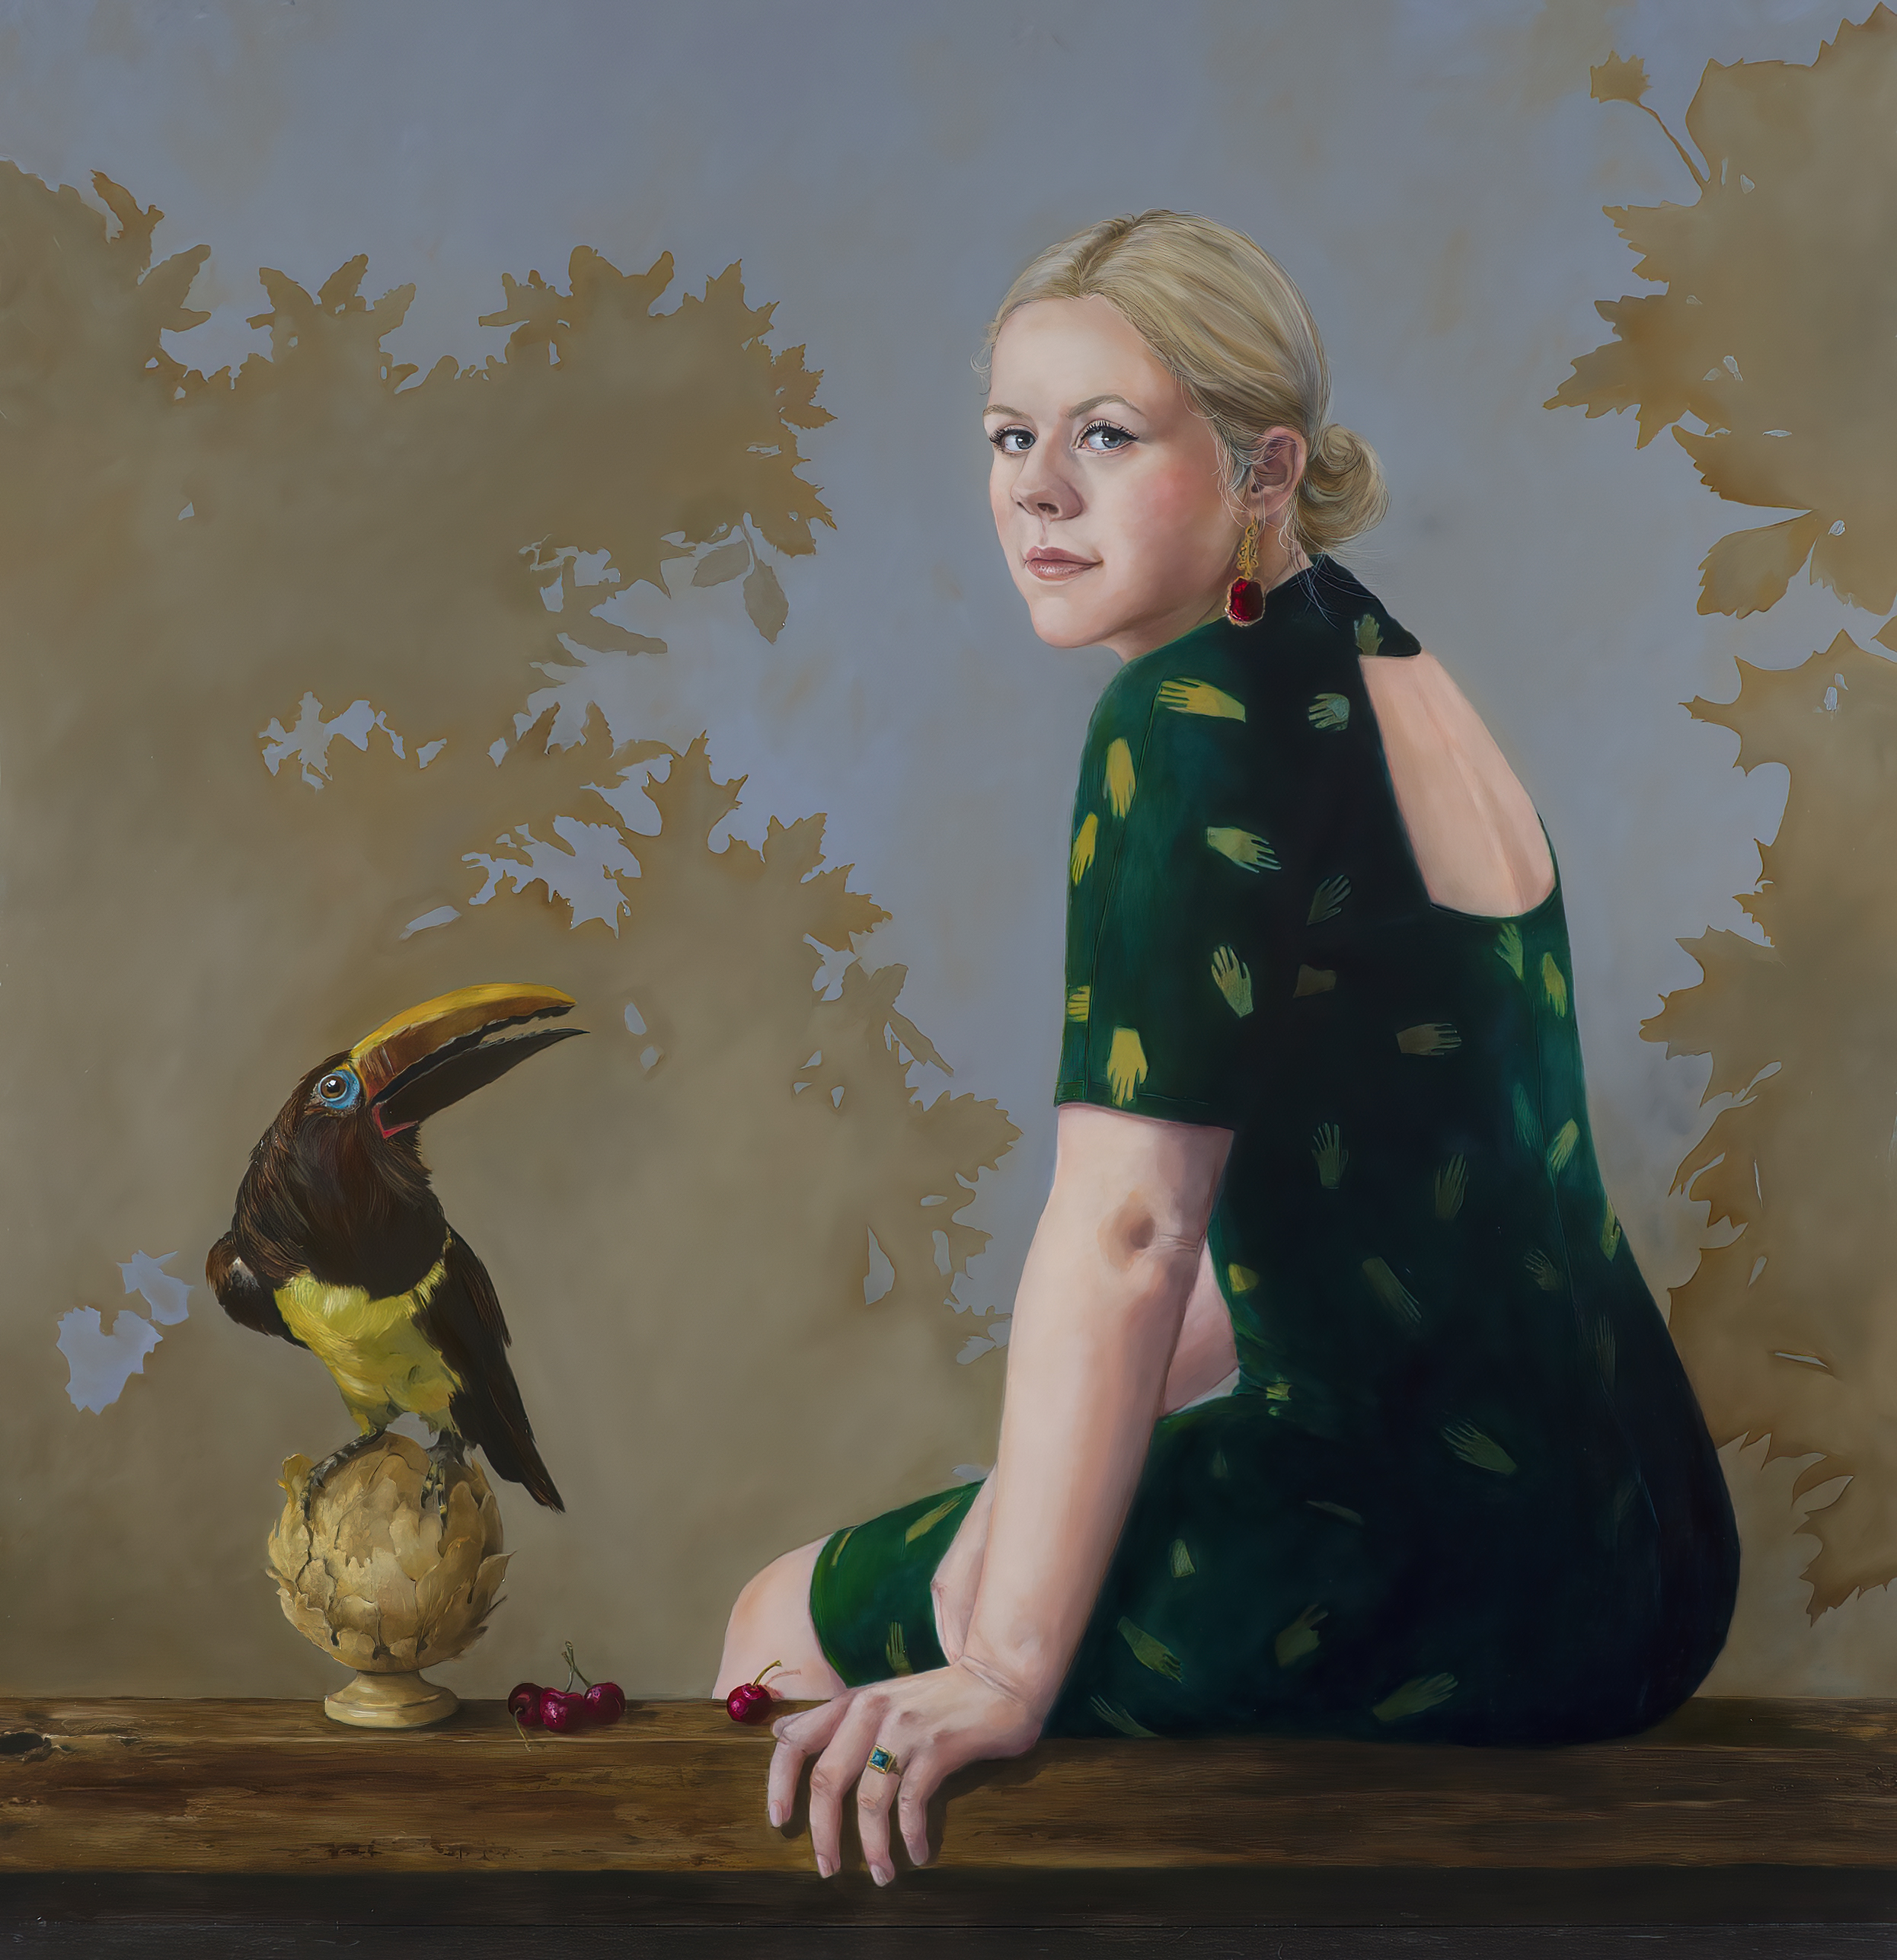 Een olieverfportret op een paneel van 90 x 95 cm, toont een jonge vrouw in een donkergroene jurk, zittend op een eenvoudige bank naast een Toekan. In de lichtblauwe achtergrond is een geabstraheerde afbeelding van bladeren geschilderd. Dit vrije kunstwerk is in 2021 geschilderd door kunstenaar Anneke Ensing. Dit schilderij was in 2021 genomineerd voor Painting of the Year.